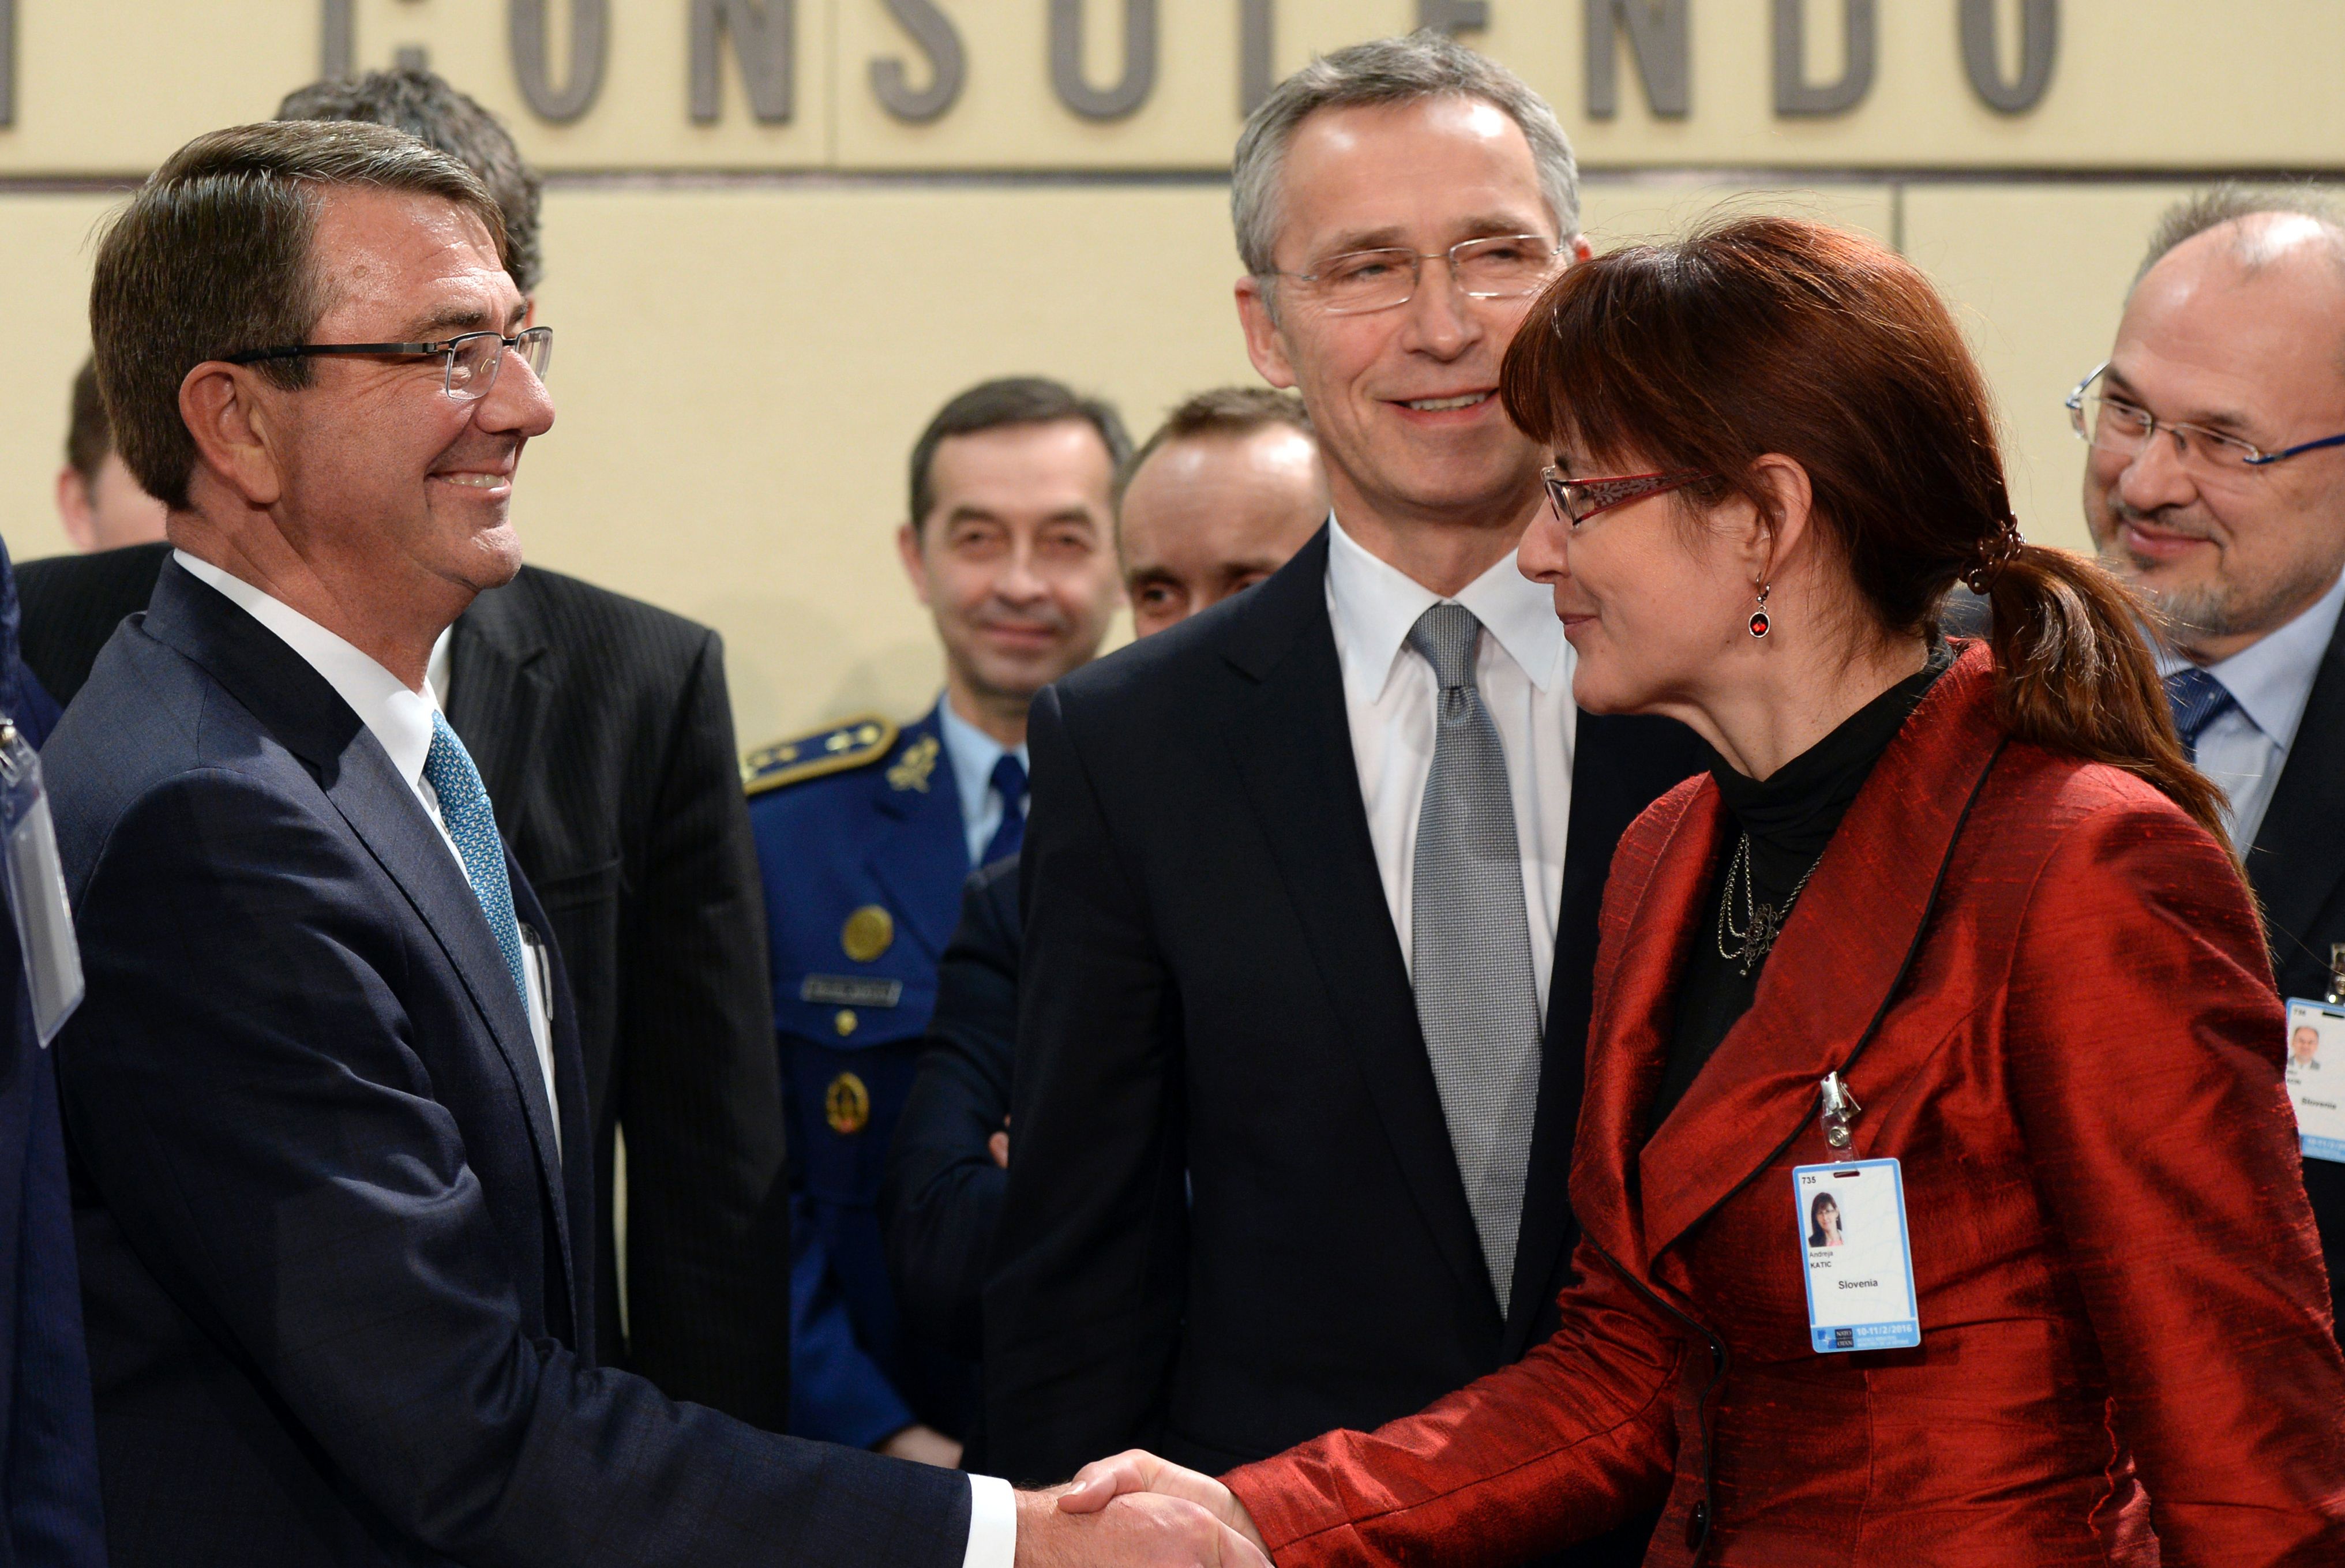 Truppenbewegung: Nato will weitere Aufrüstung im Osten